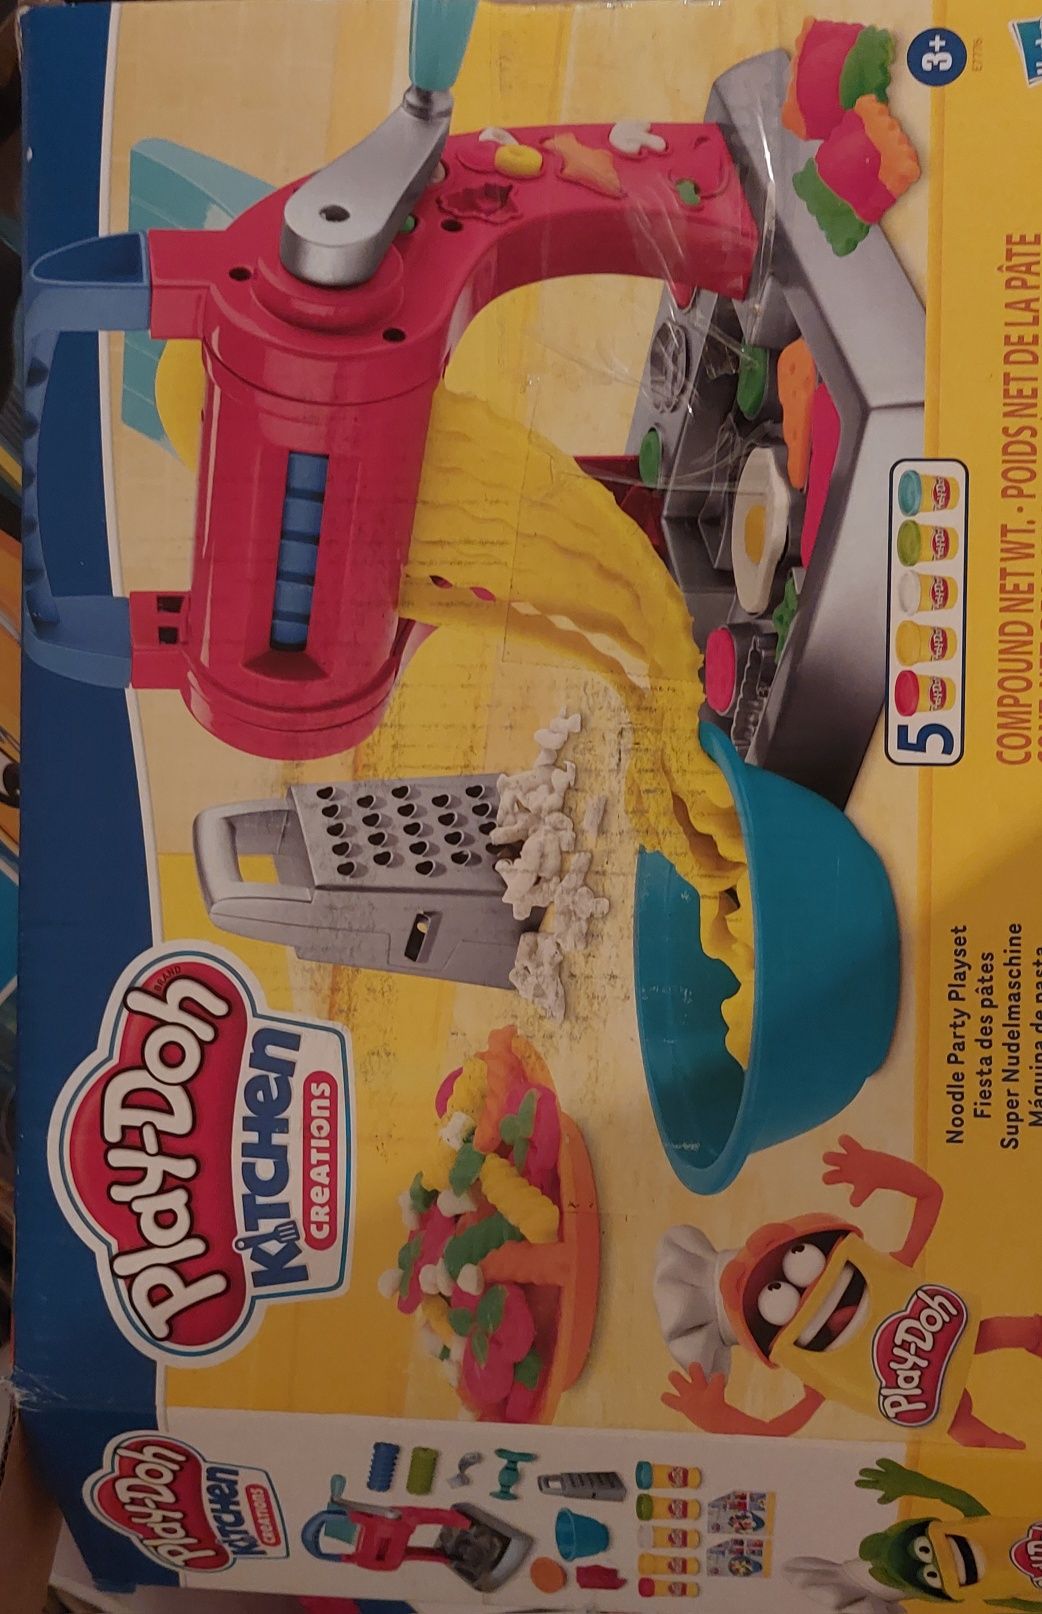 Ciastolina Play-doh kitchen kuchnia maszynka do makaronu